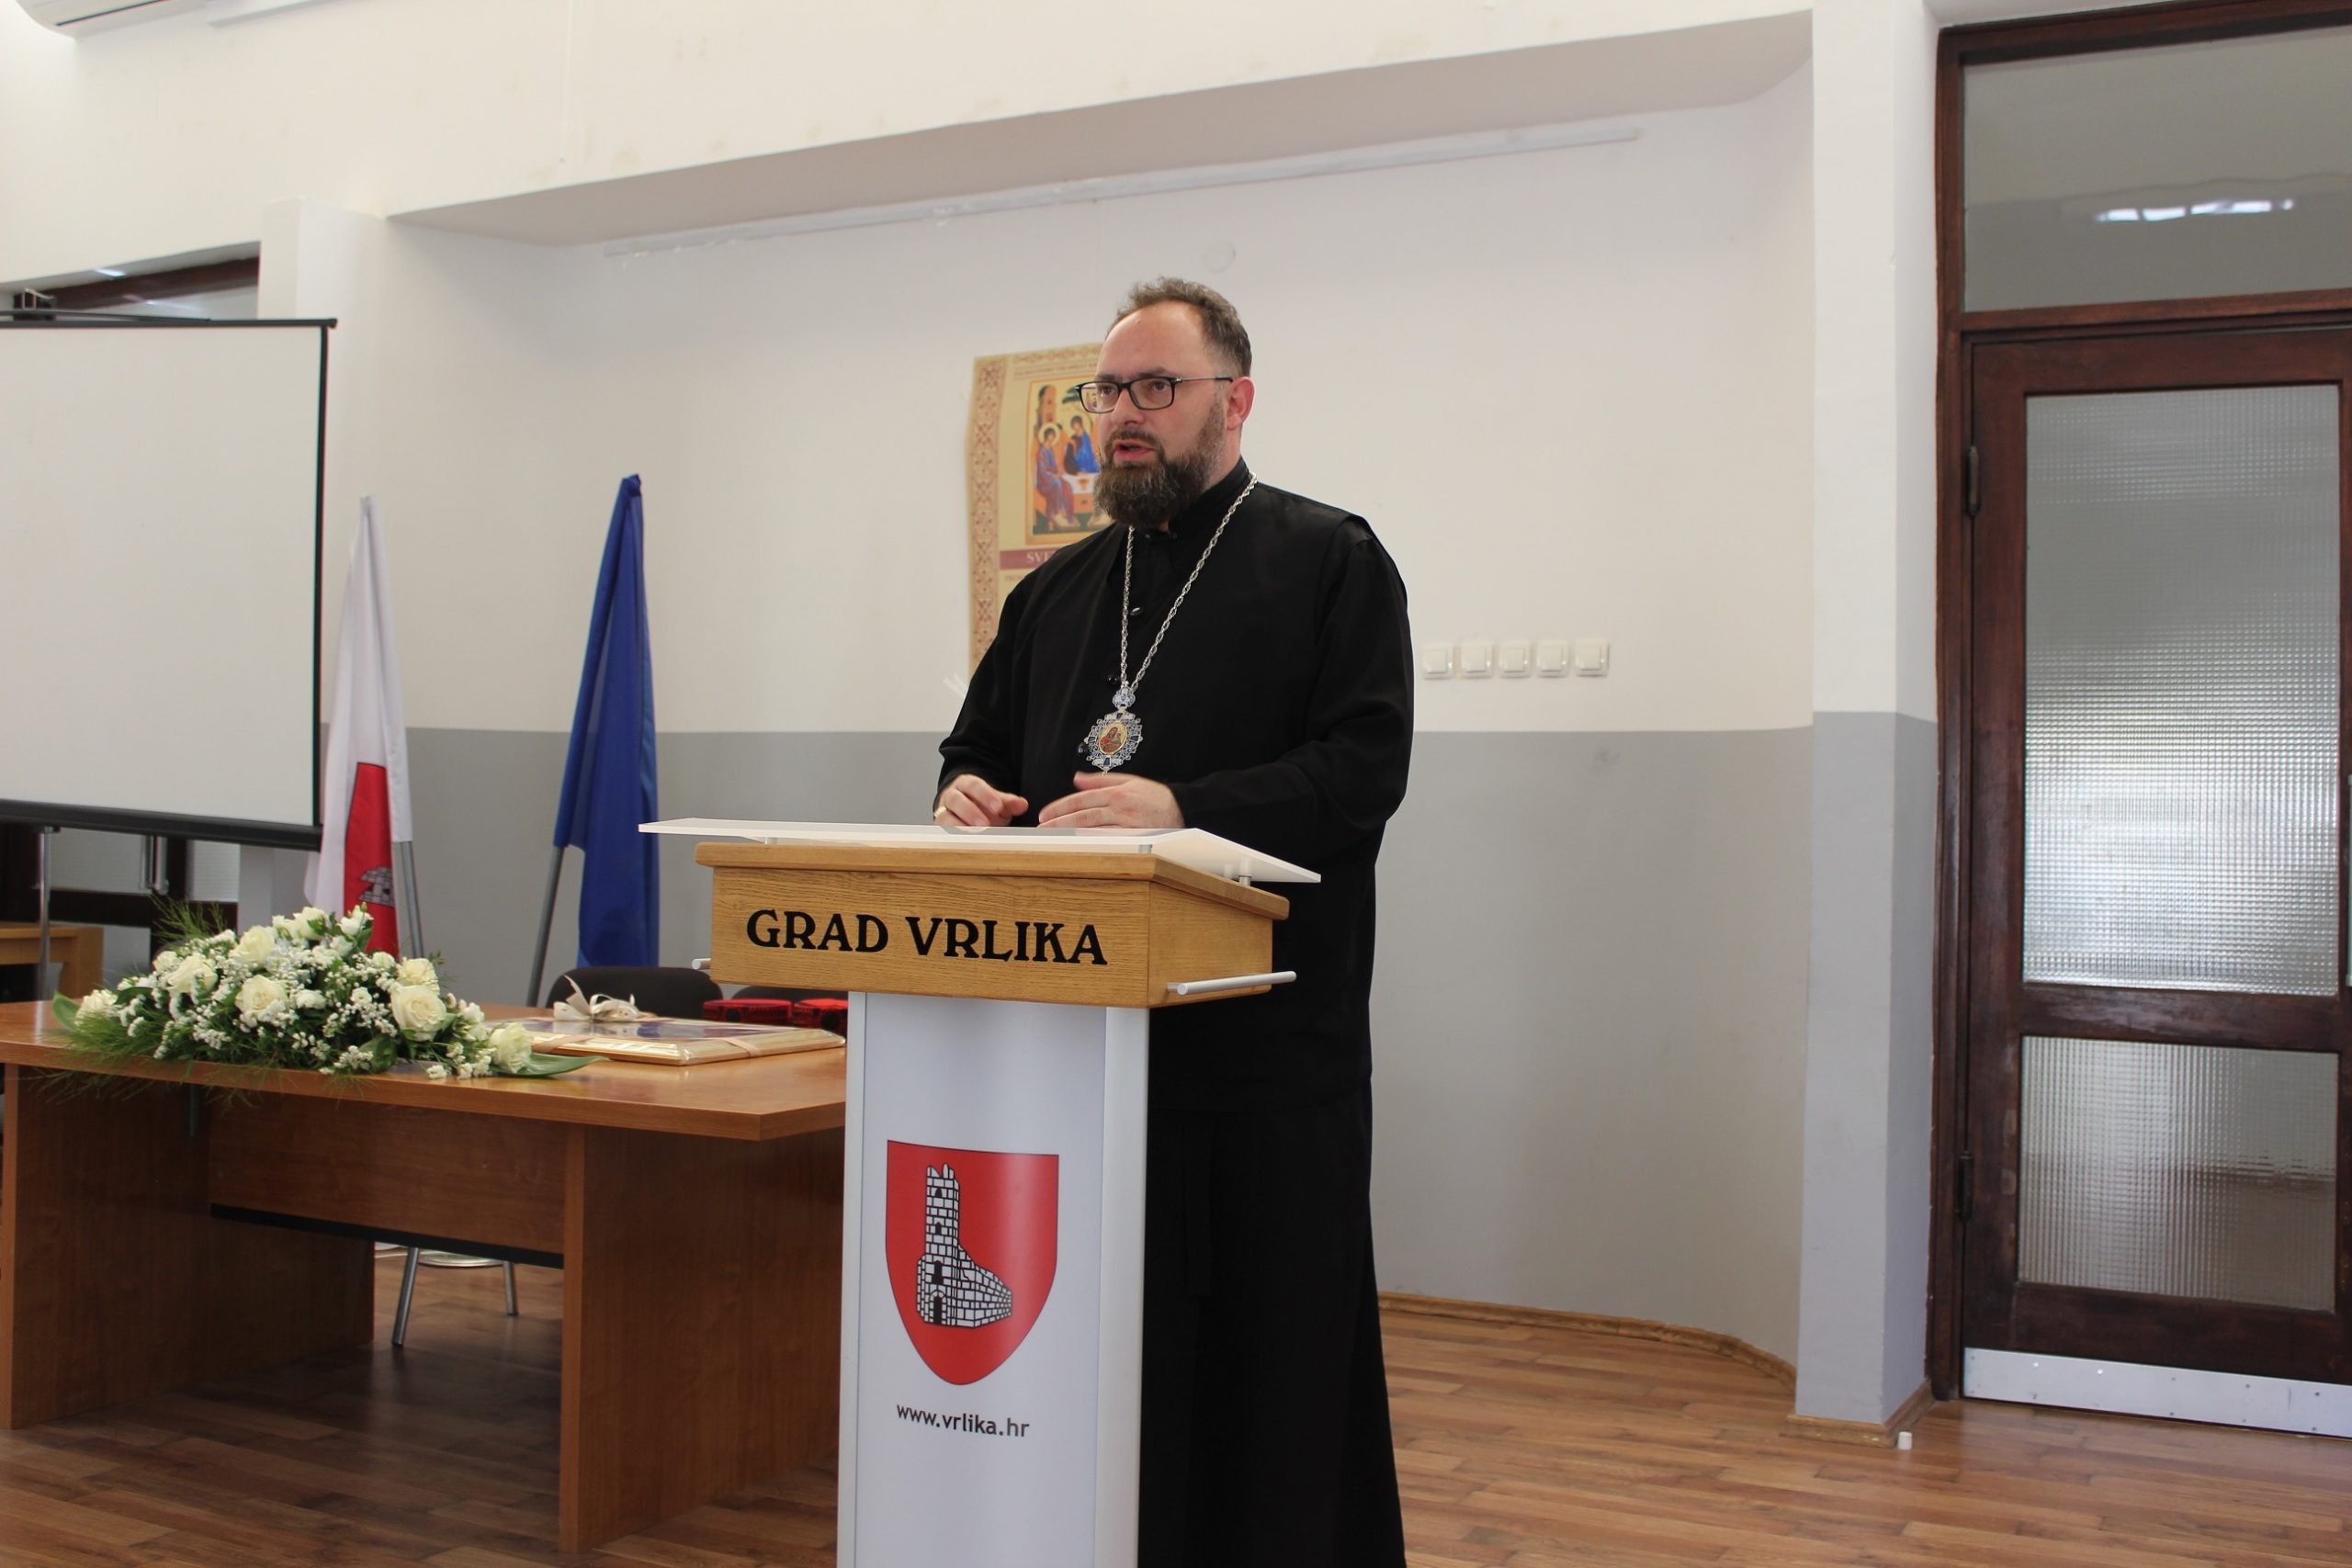 Greek Catholics come back to Vrlika in Croatia and celebrate